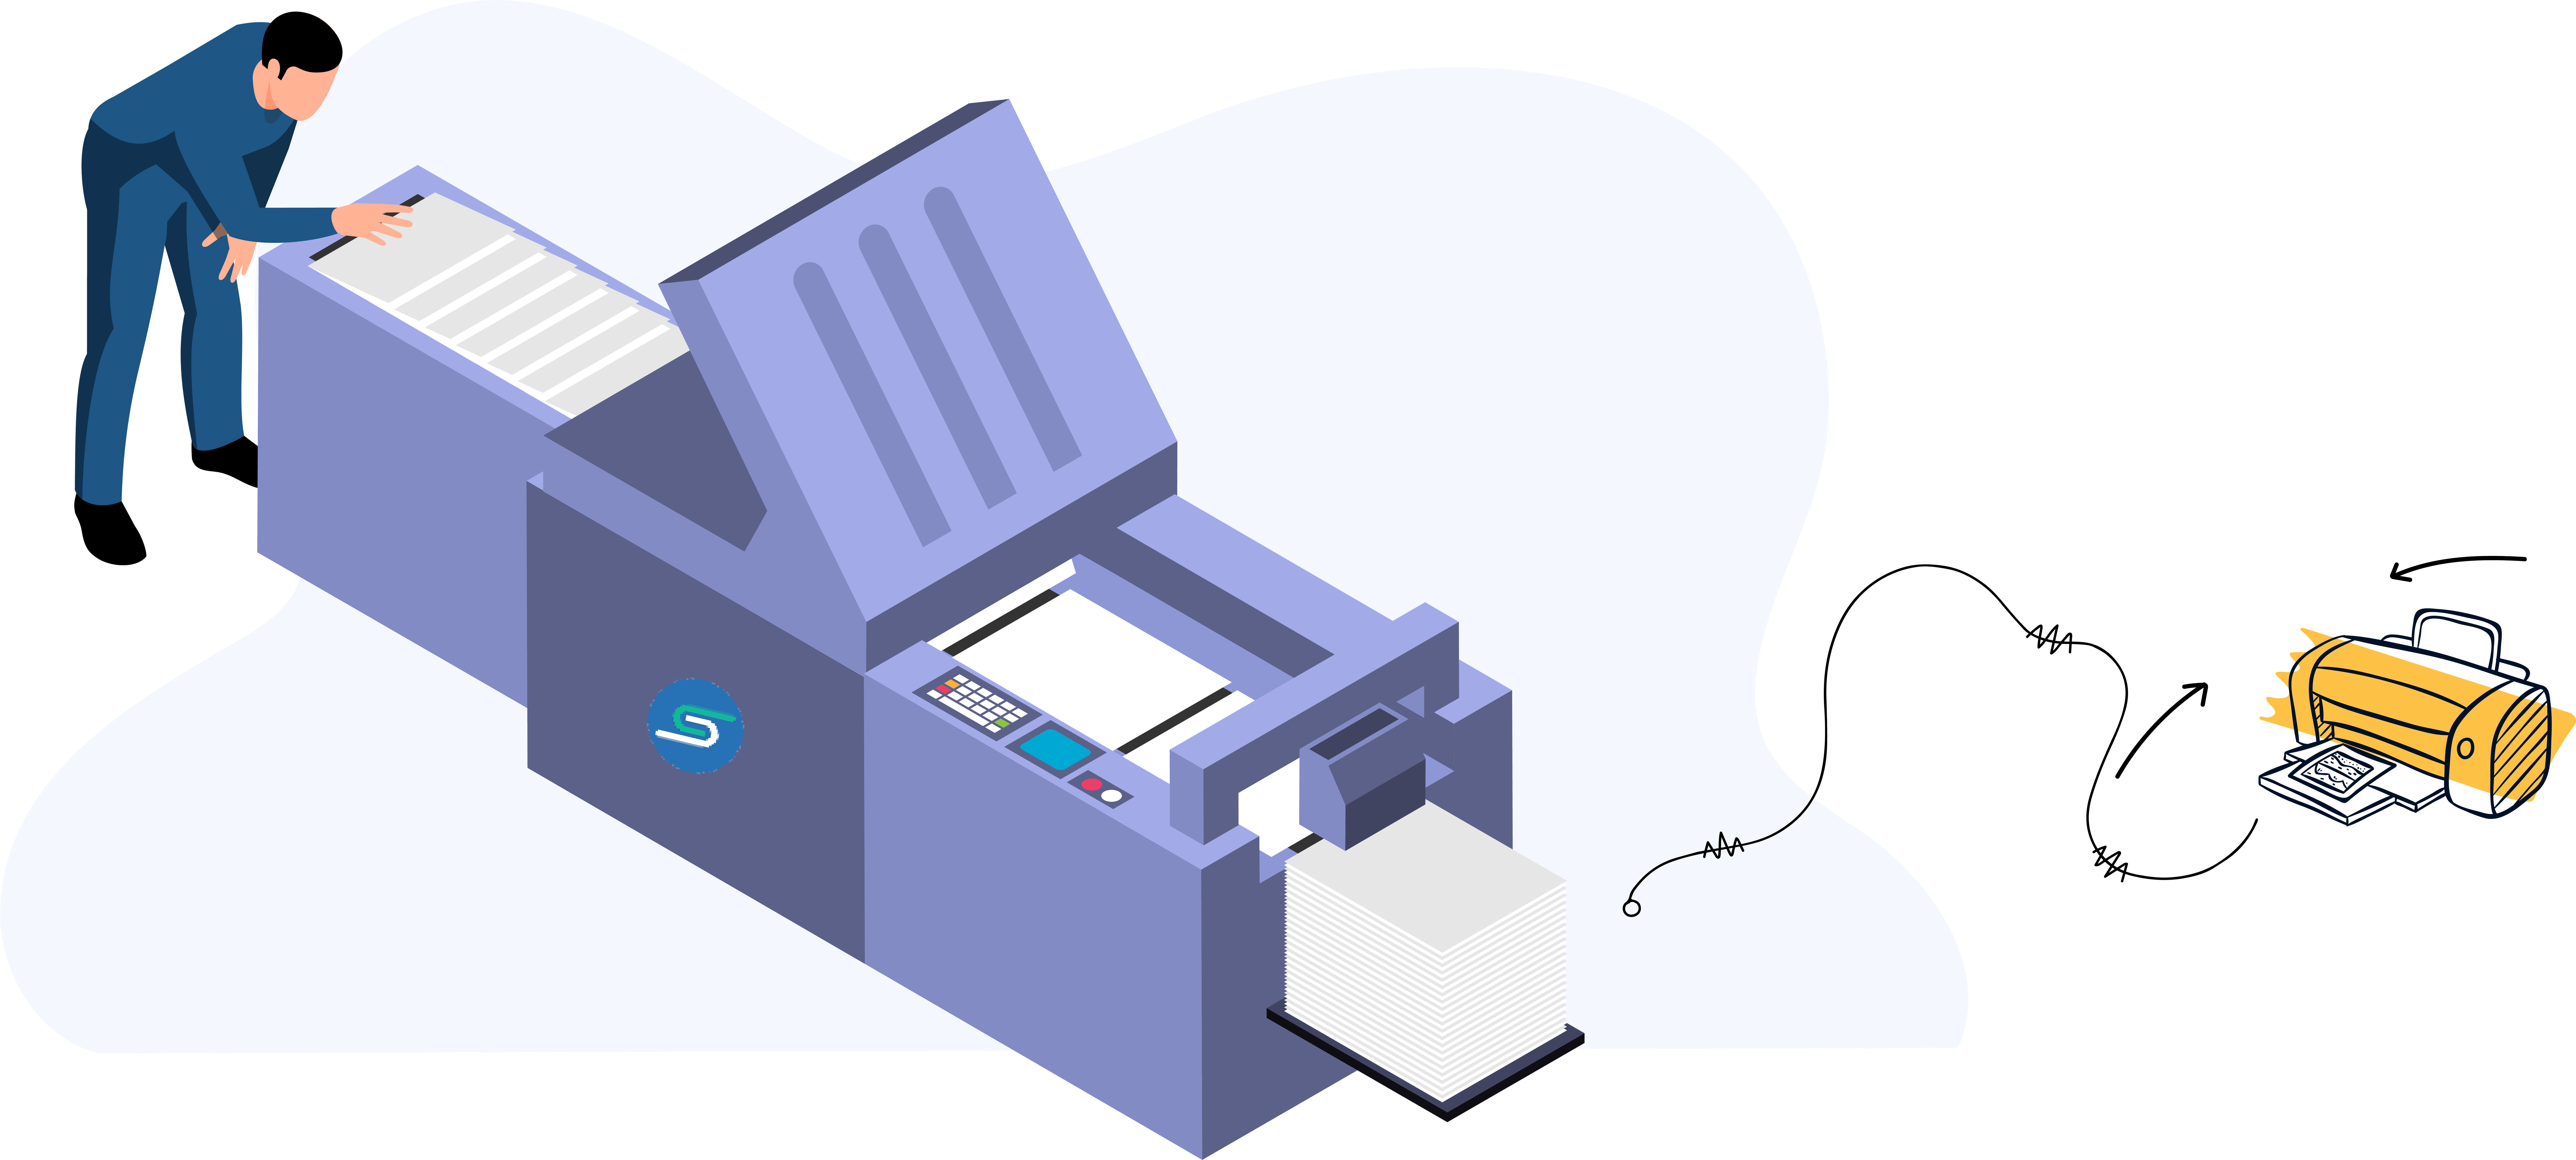 Men printing something